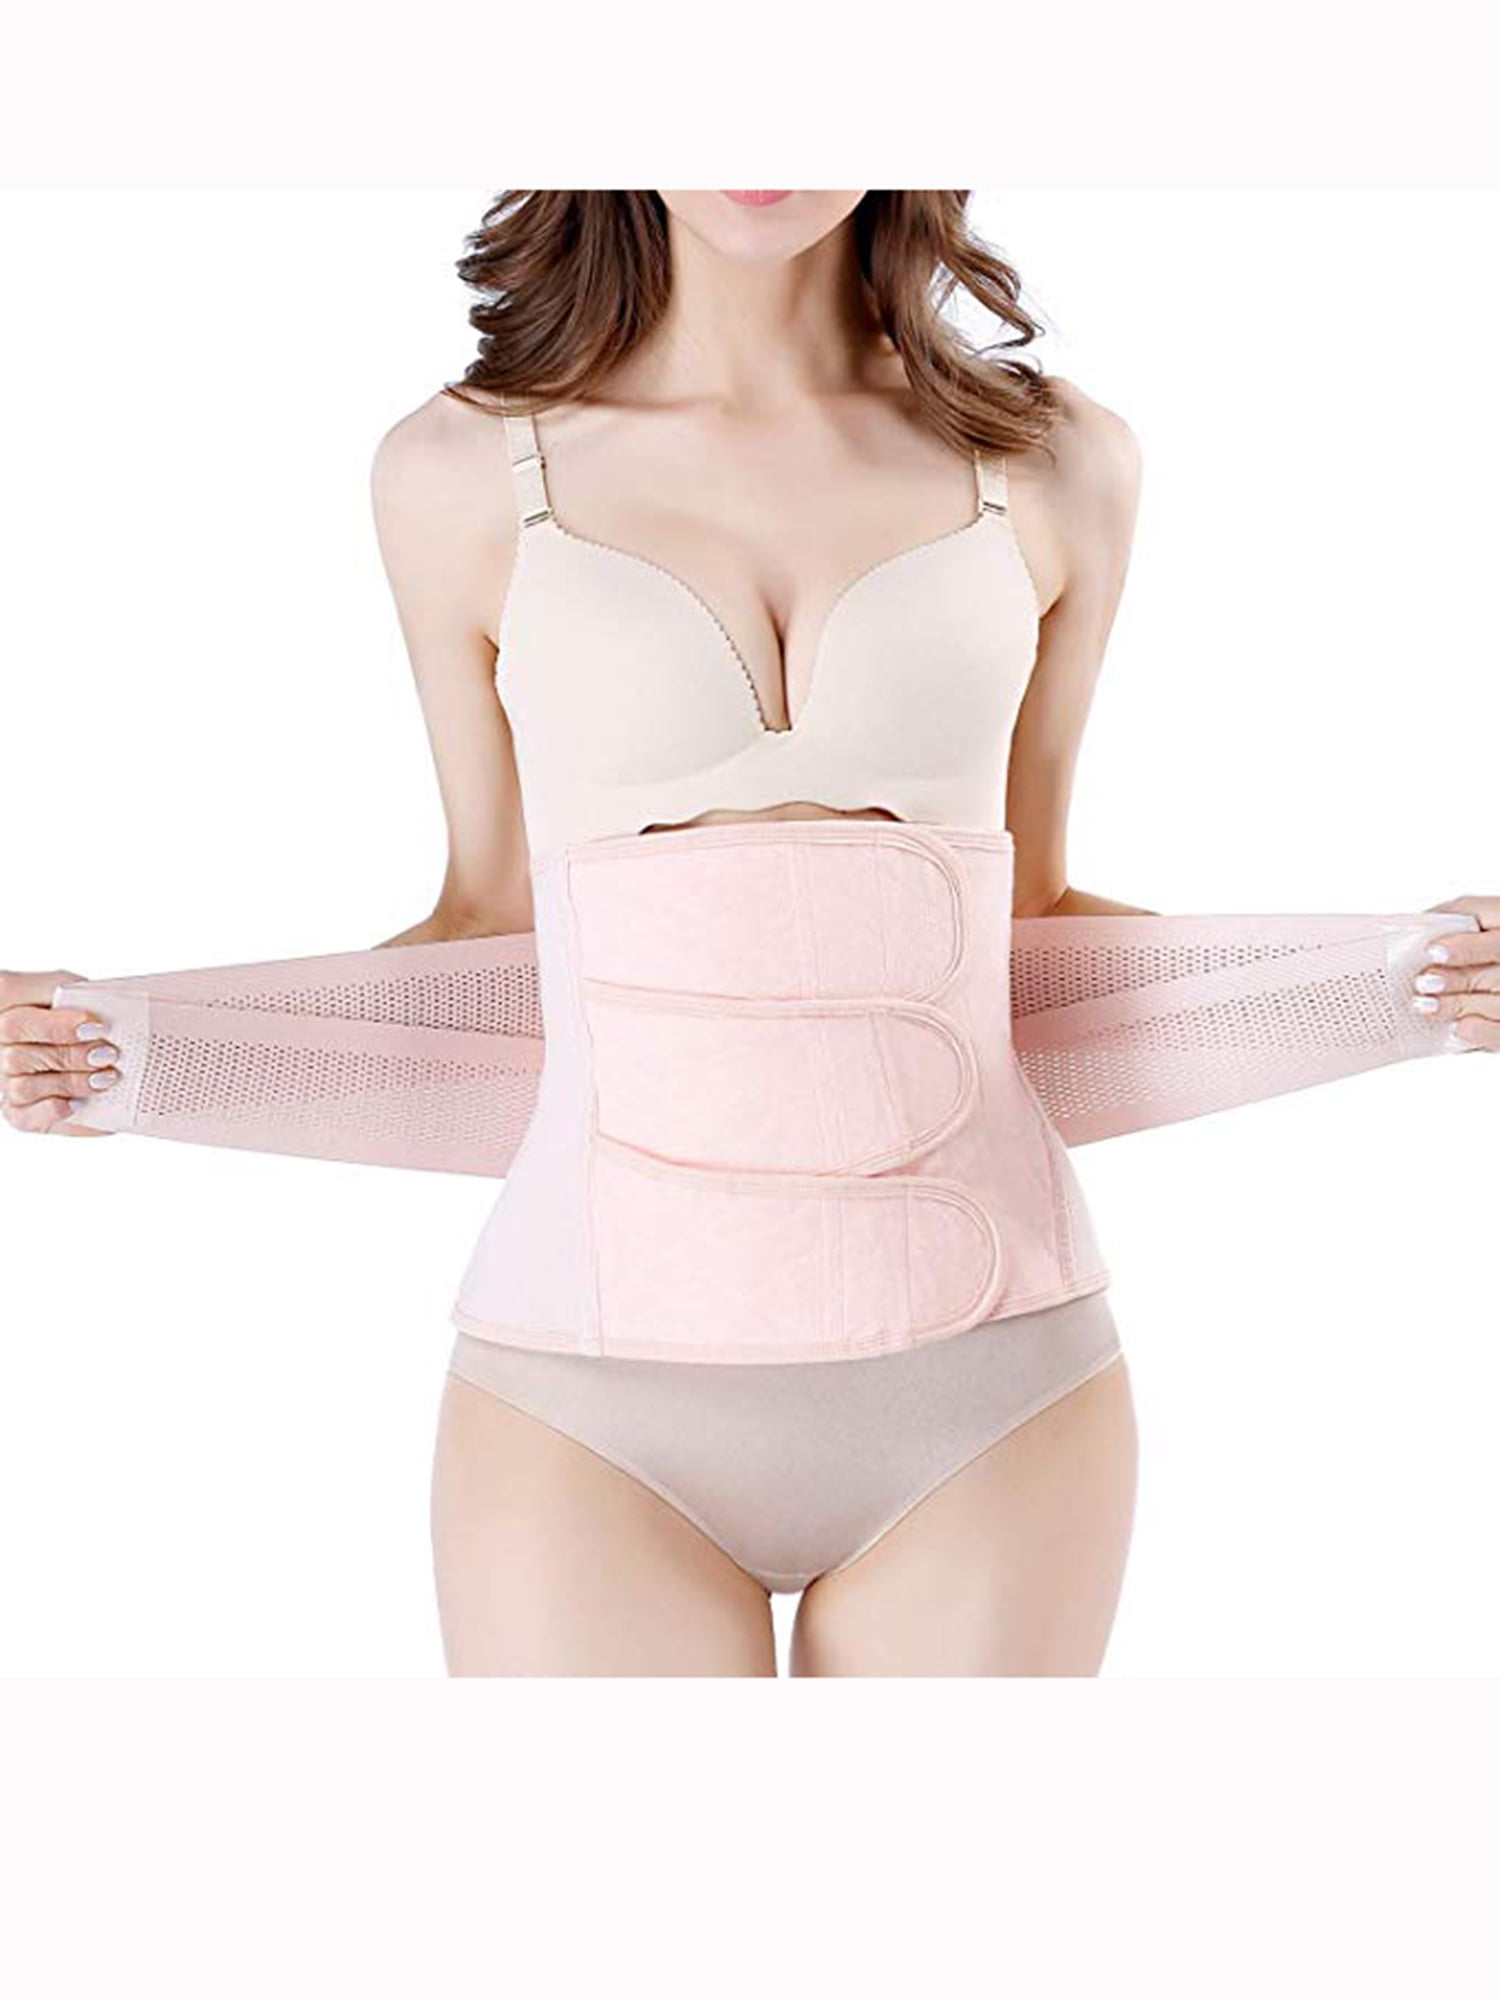 Women Body Shaper Postpartum Recovery Band Belly Wrap Shapewear